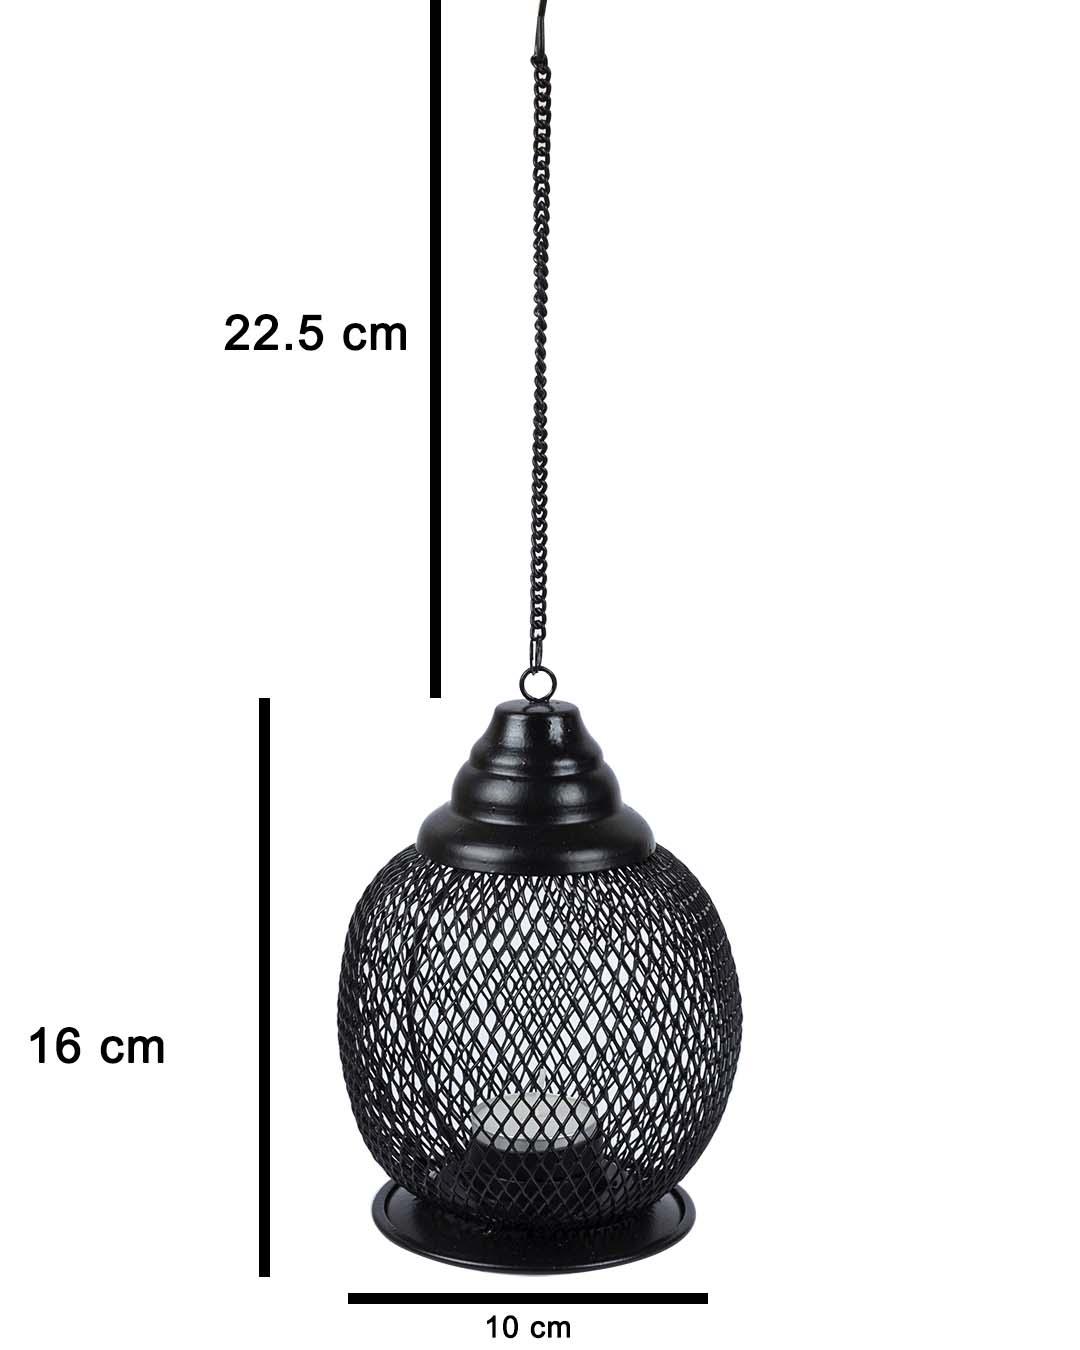 VON CASA Hanging T-Light Holder, Diwali Decor, Black, Iron